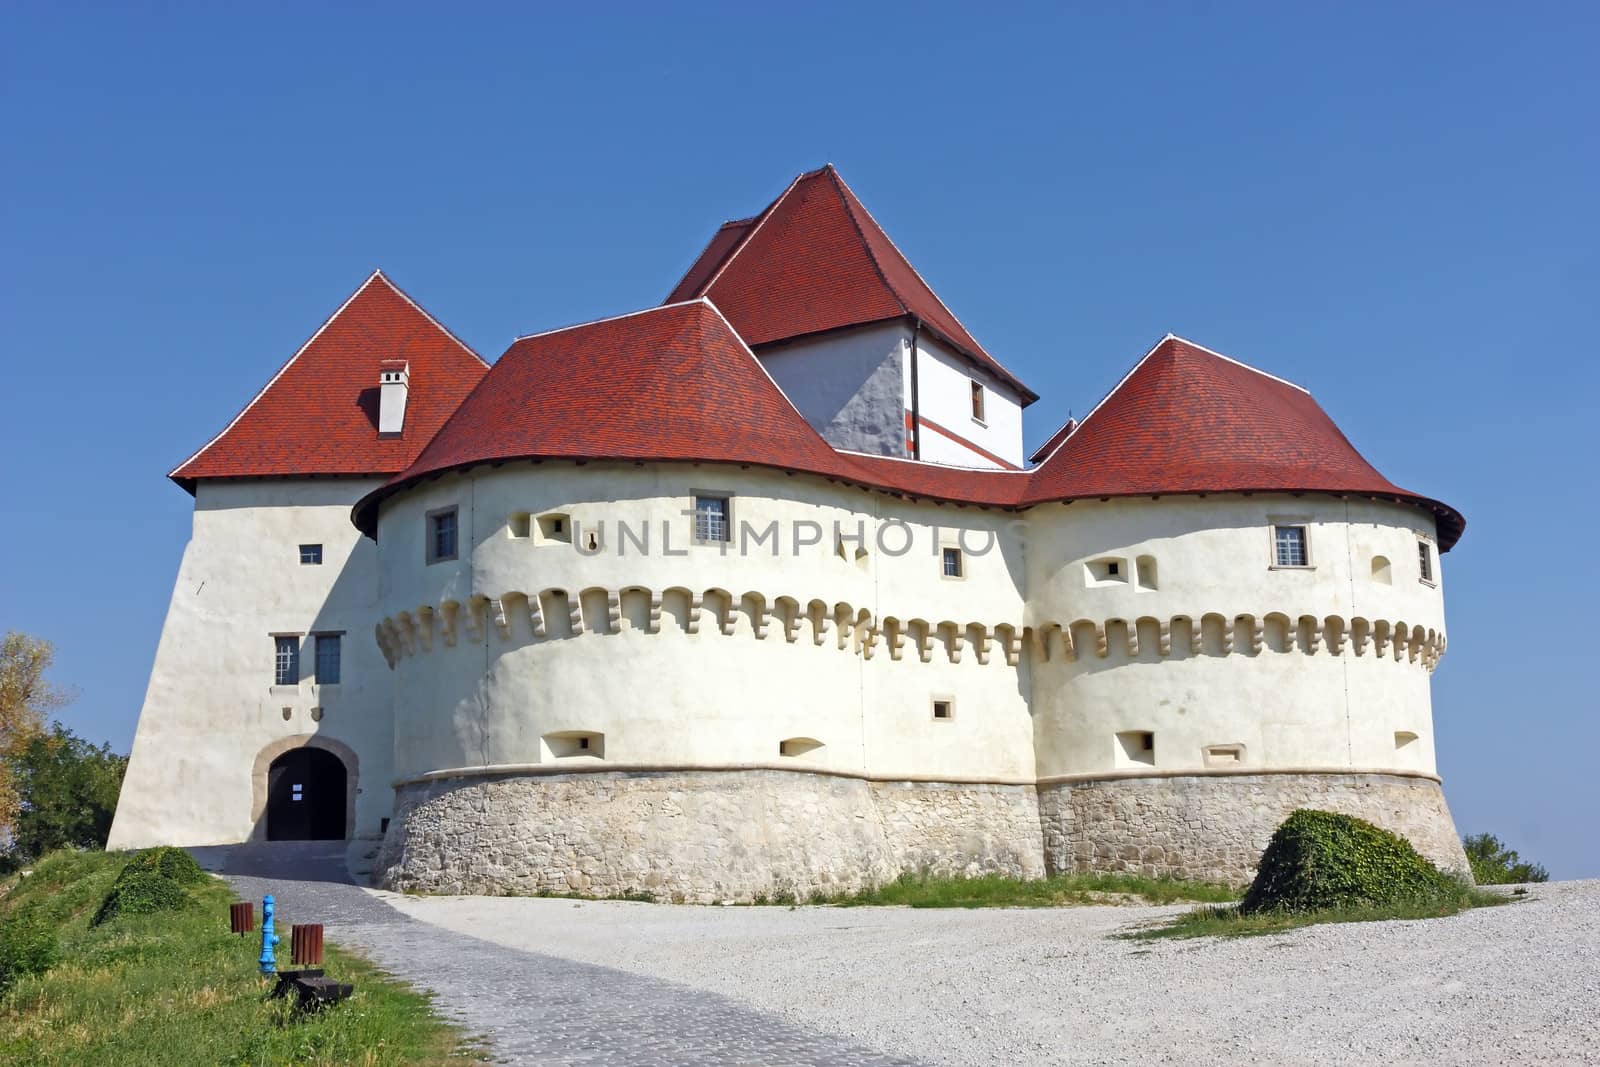 Veliki Tabor, castle by Boris15